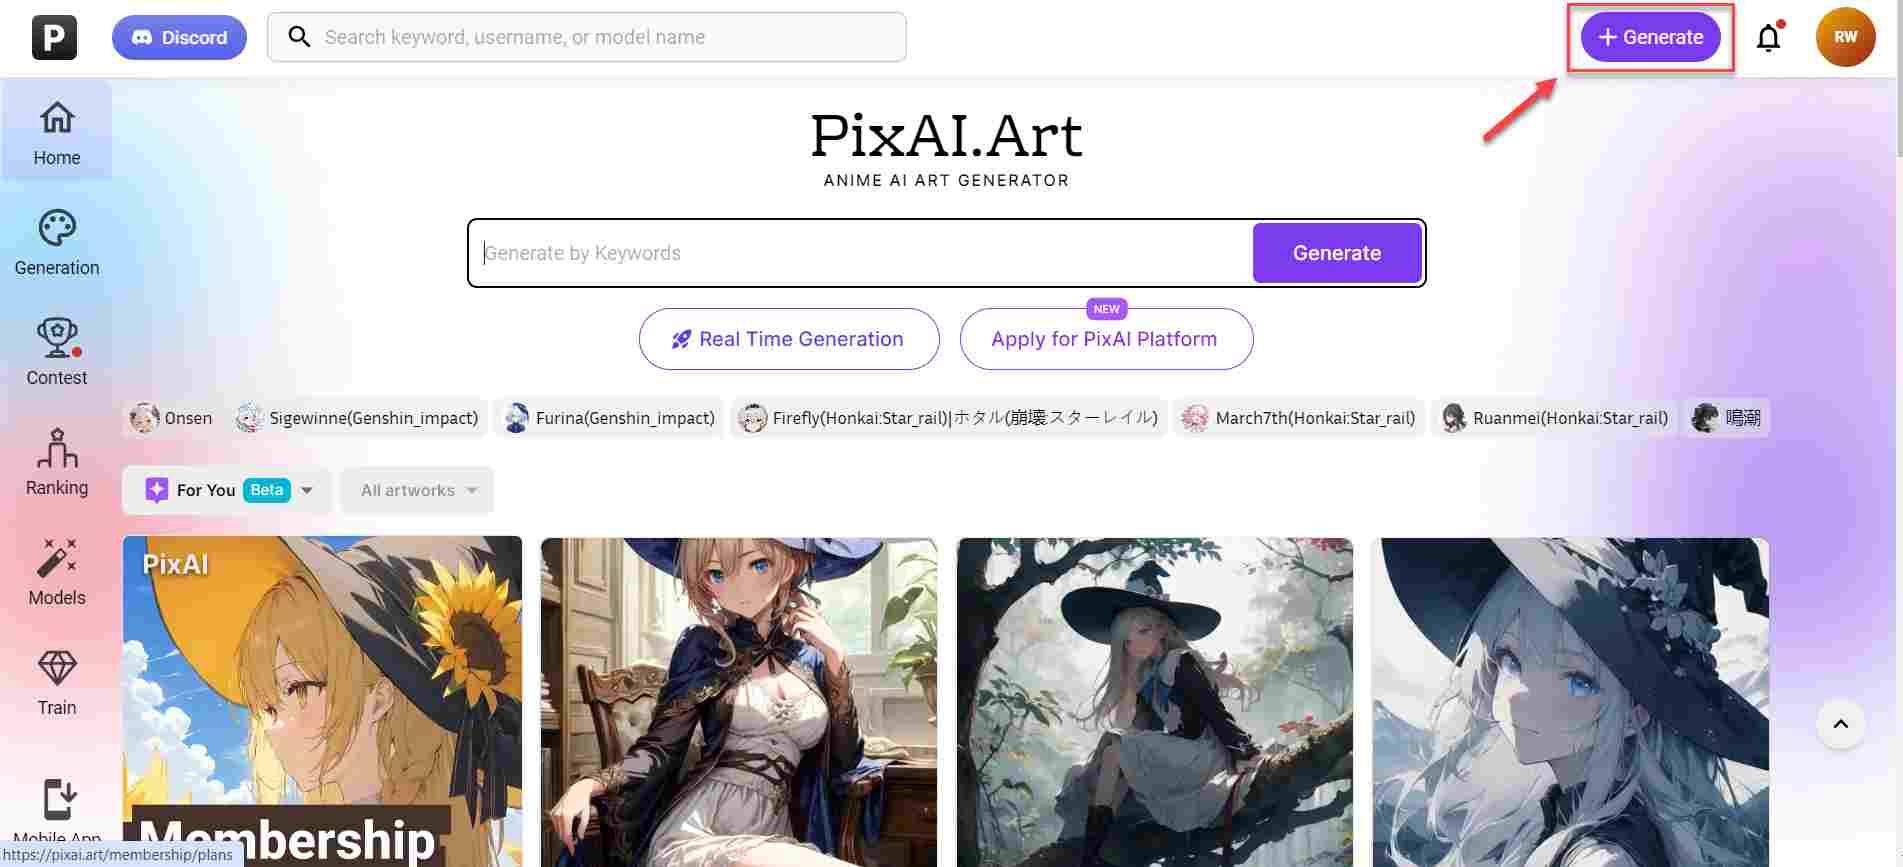  pixai.art-Generierungsschaltfläche-hervorgehoben-auf-der-Startseite 